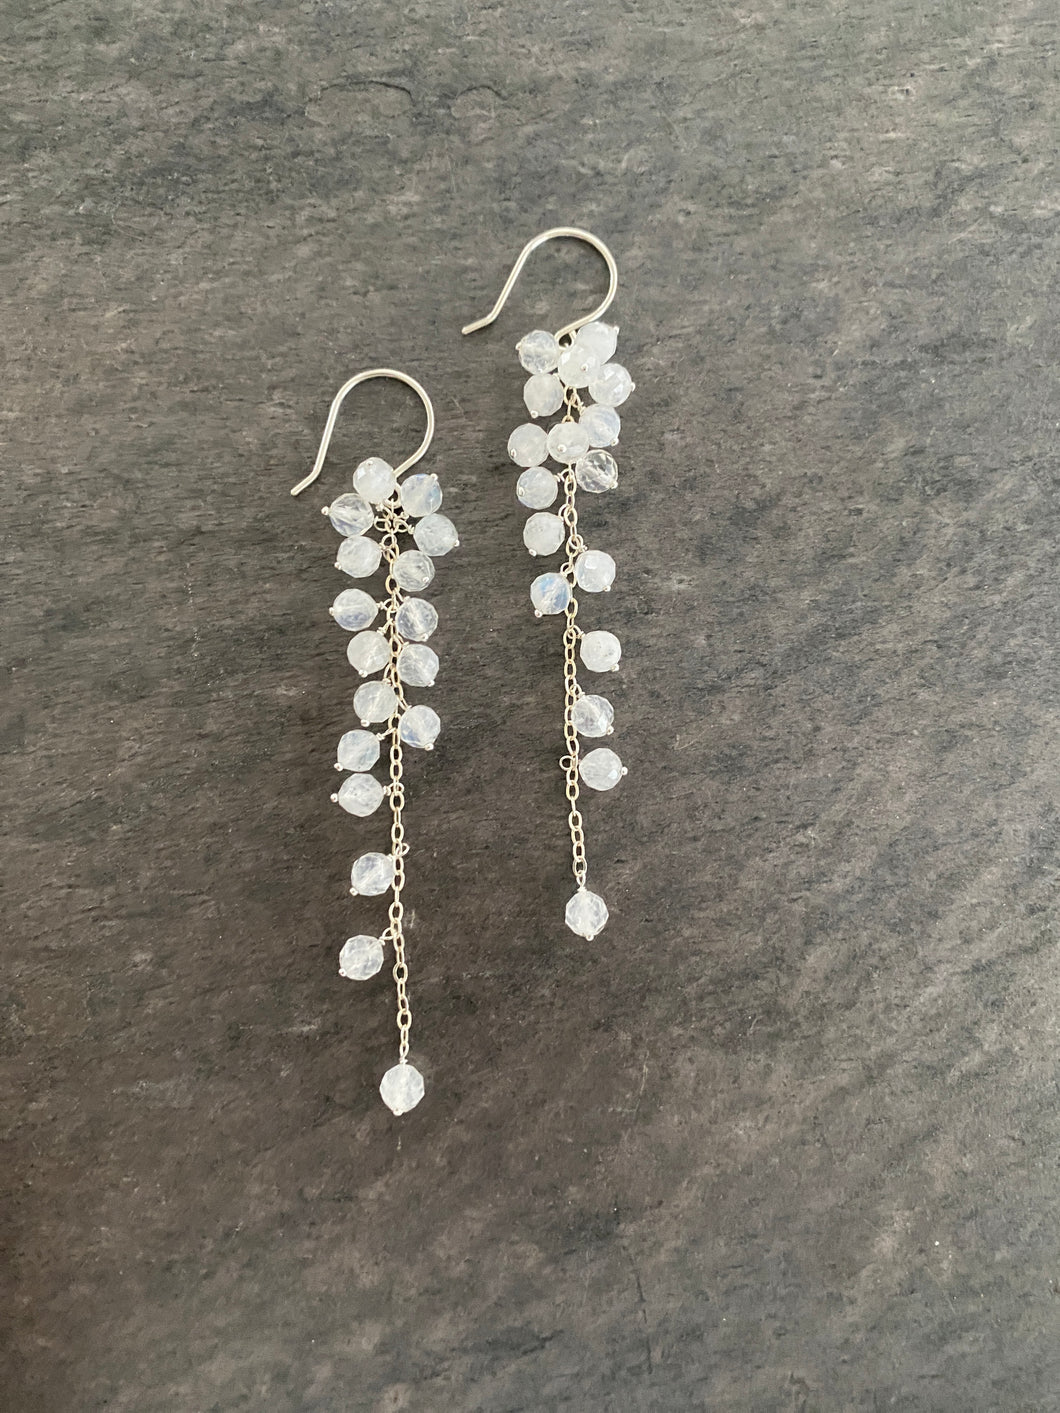 Rainbow Moonstone Earrings. Sterling silver dangle genuine gemstone earrings.